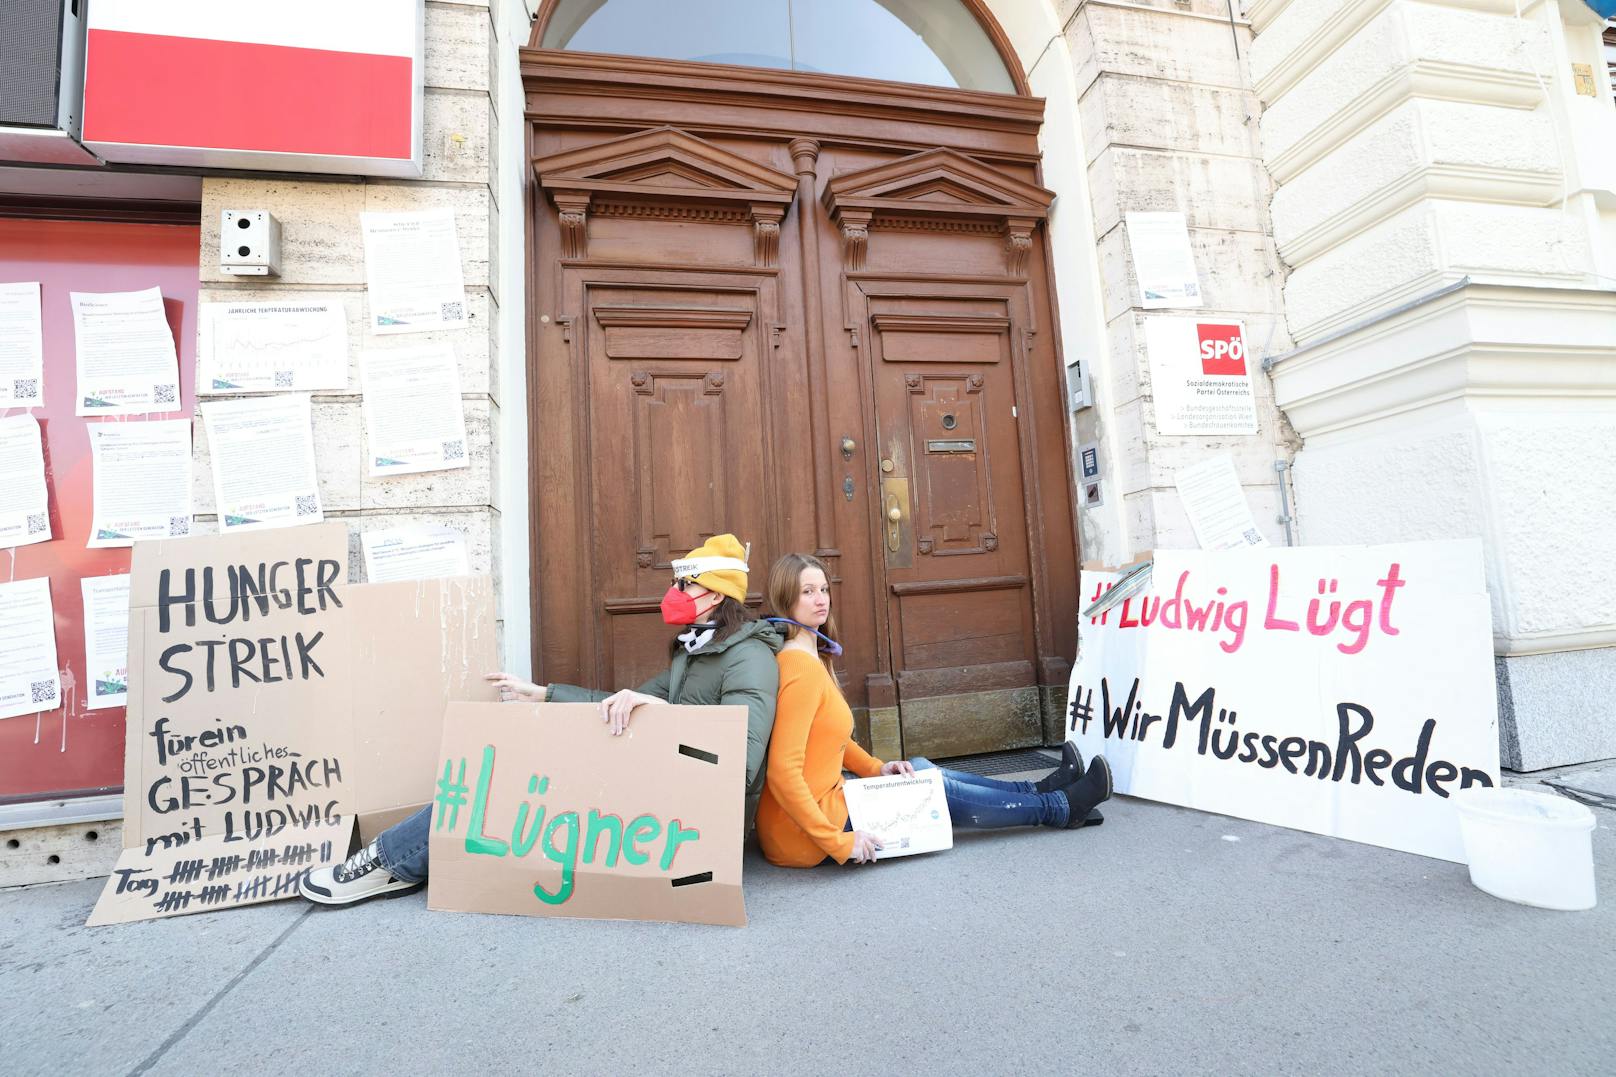 Zwei Aktivistinnen ketteten sich vor der SPÖ-Parteizentrale aneinander. Sie fordern den Abbruch der Arbeiten an der Stadtstraße.